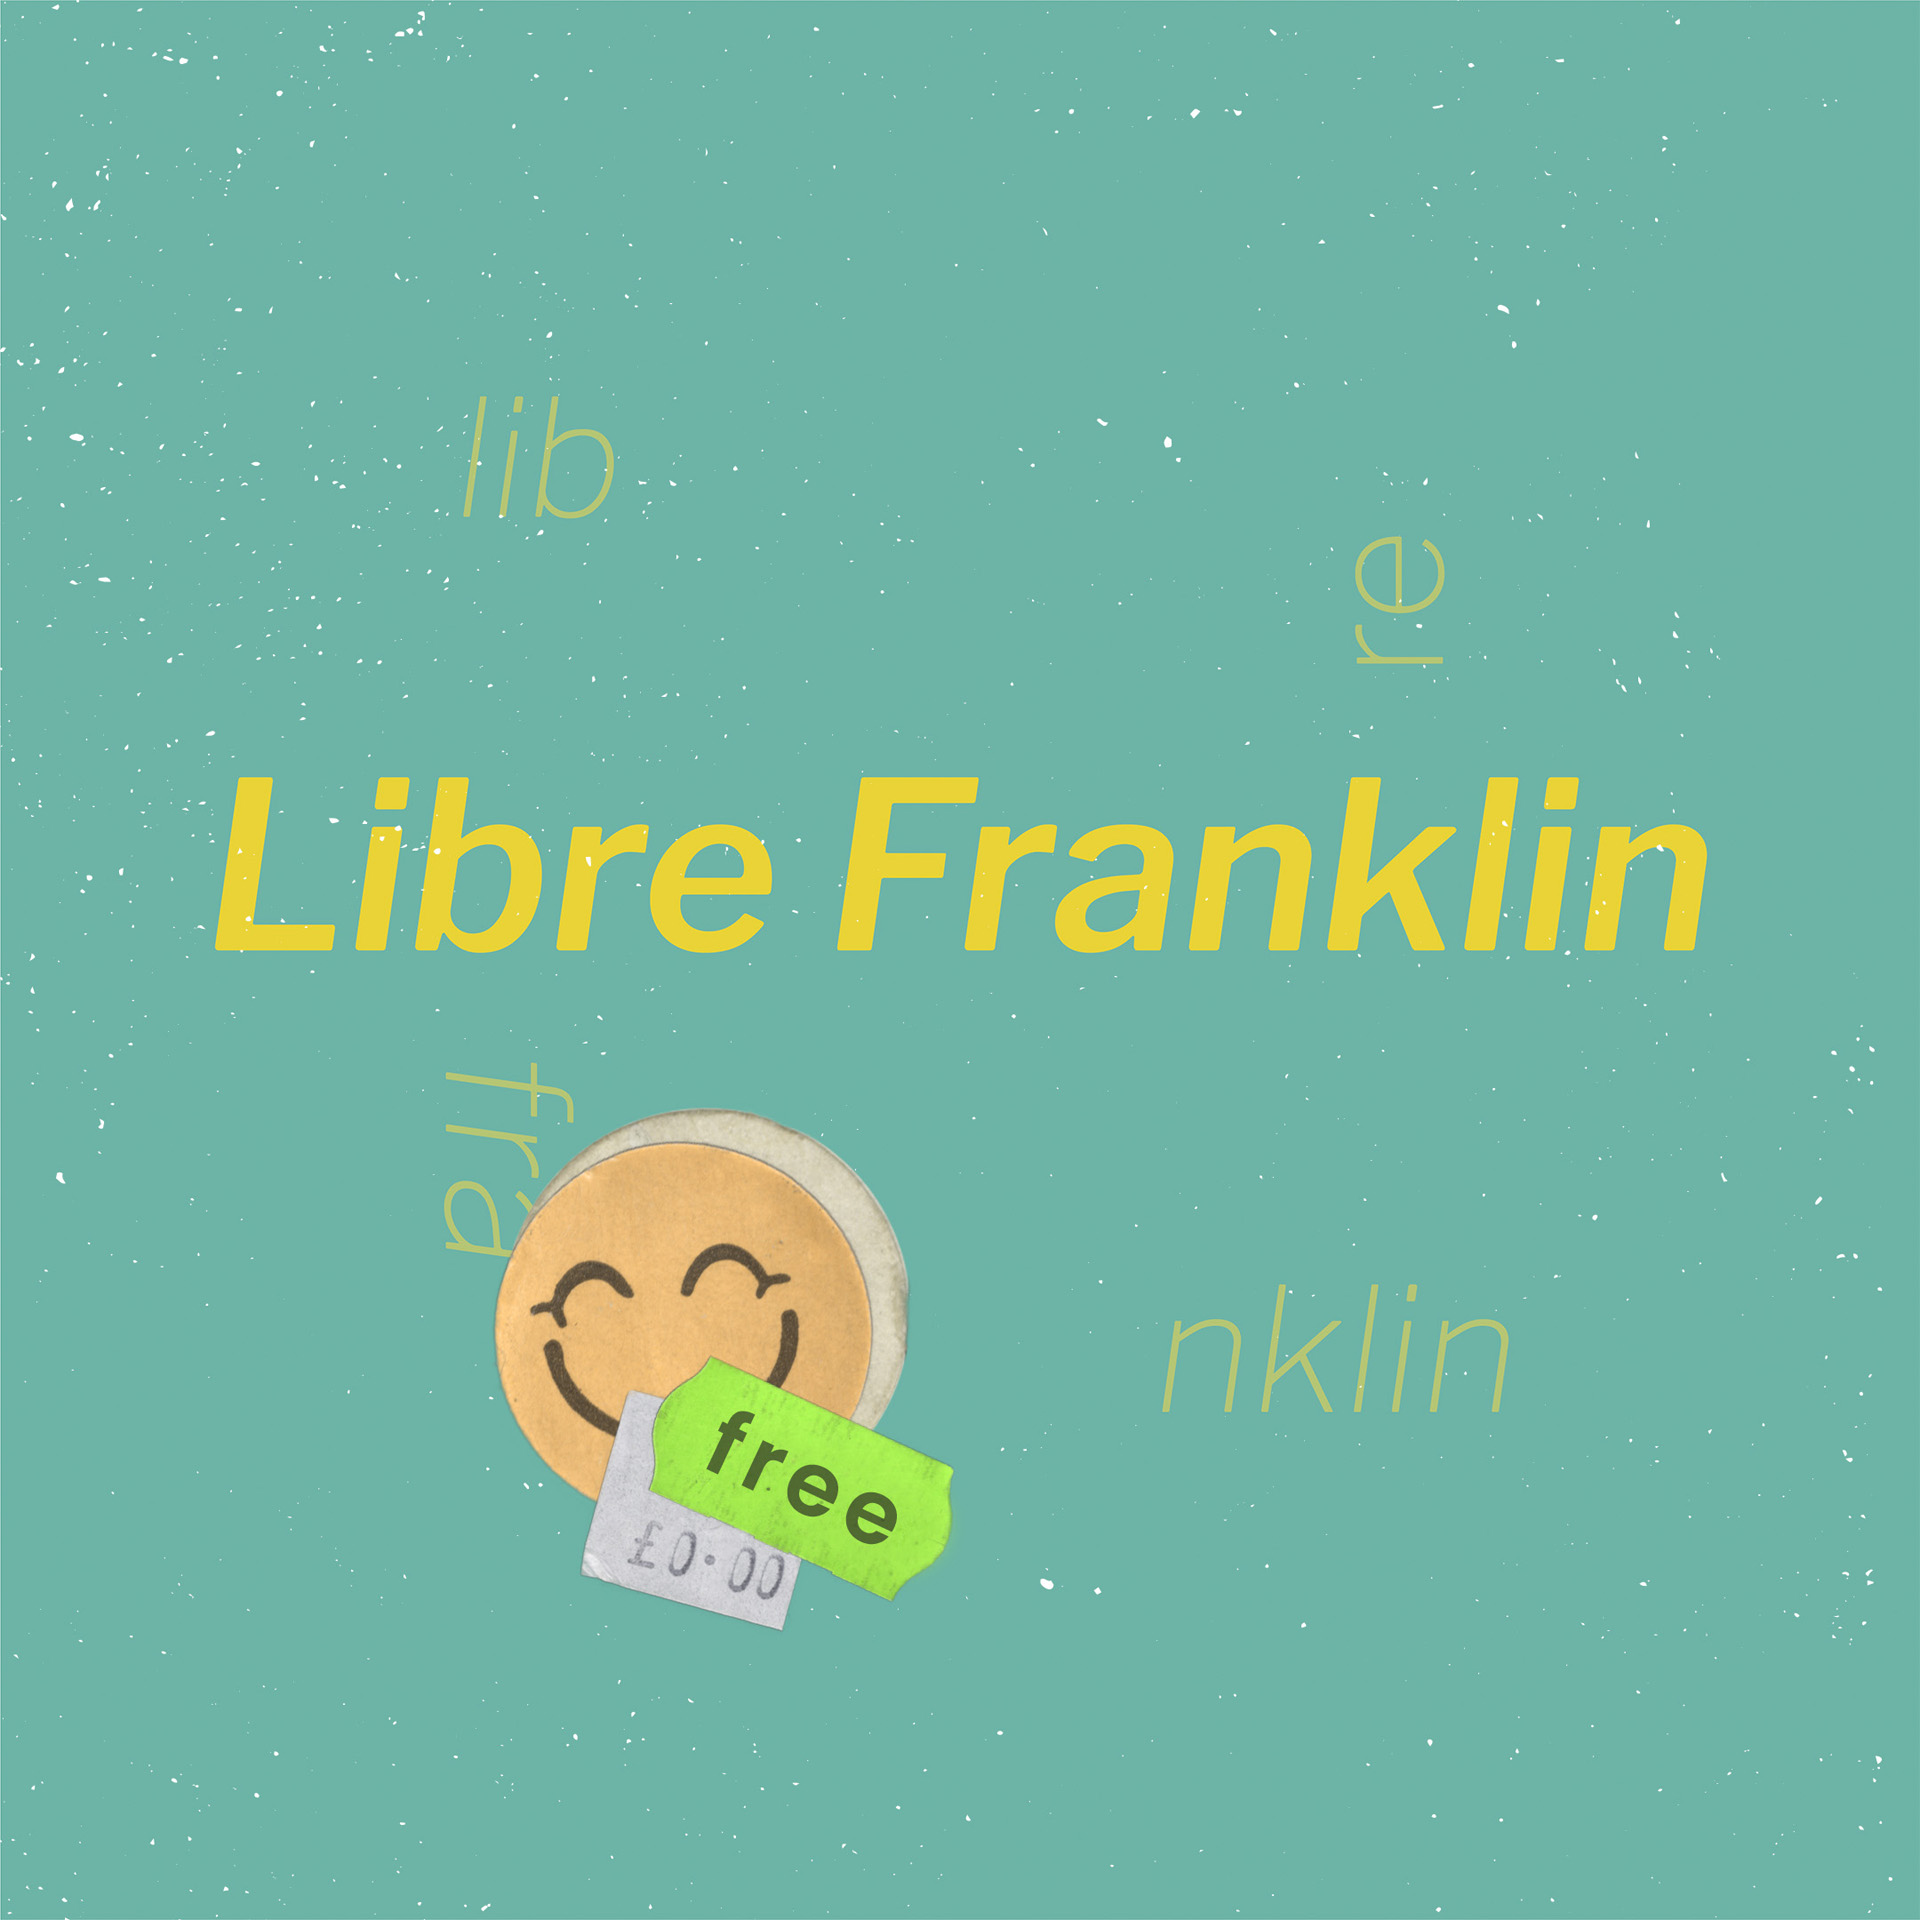 Free Google Fonts: Libre Franklin